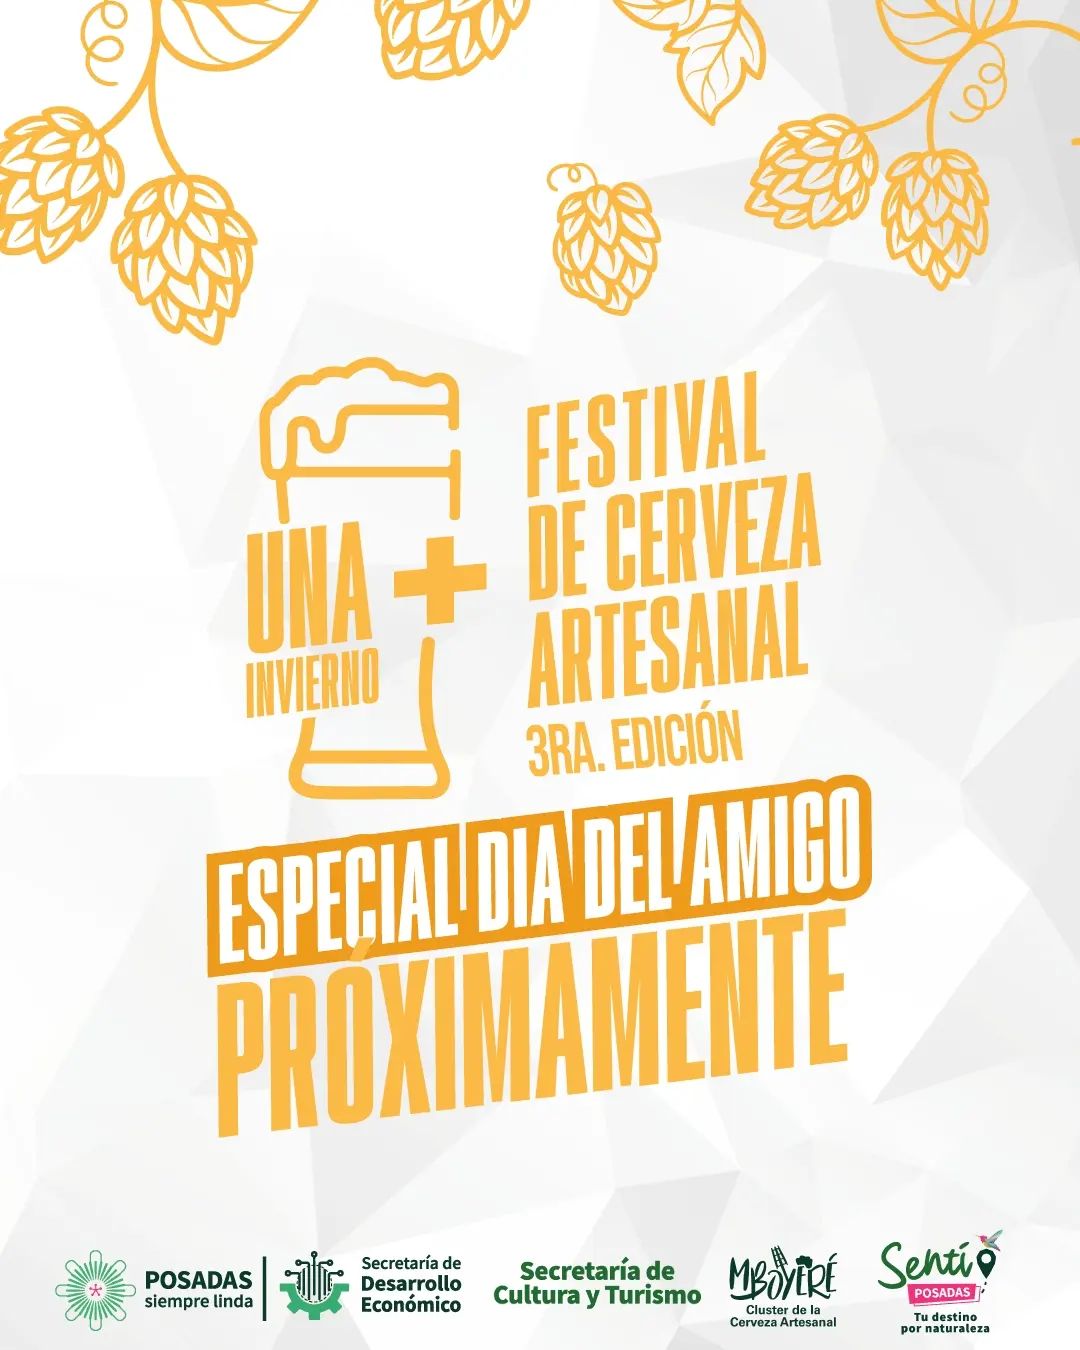 "UNA +, Invierno", llega otra edición del Festival de Cerveza Artesanal más popular de la región imagen-1